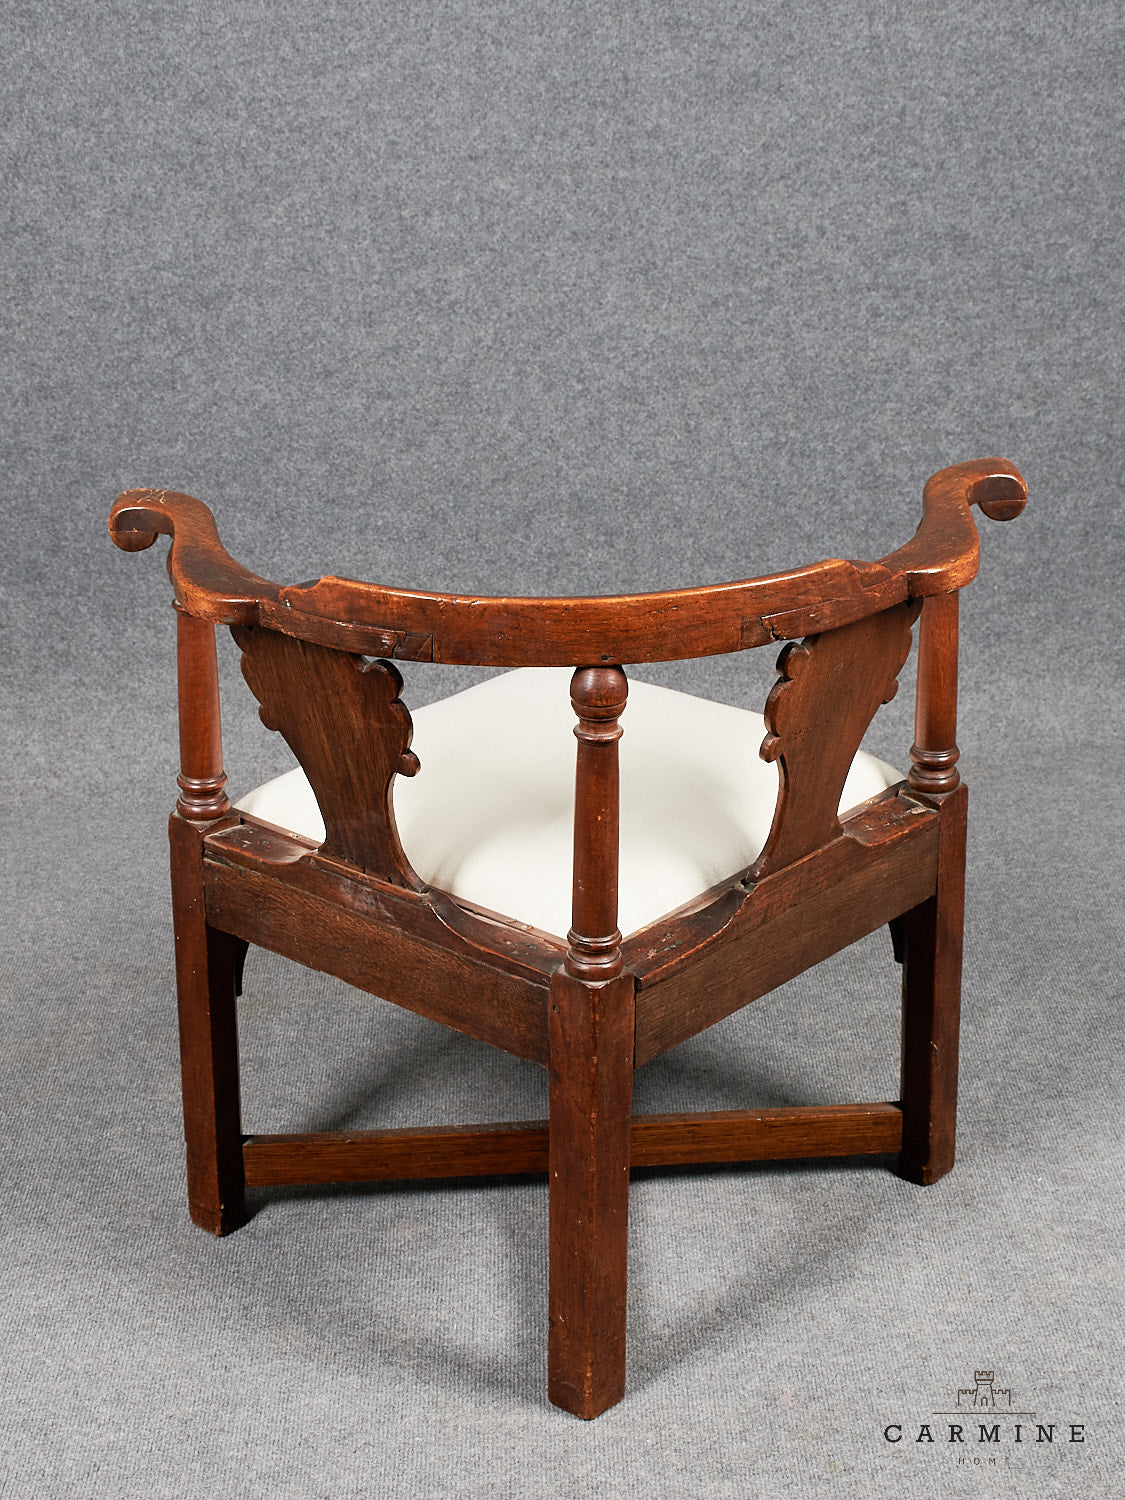 Eckstuhl (Writing-Chair) um 1750